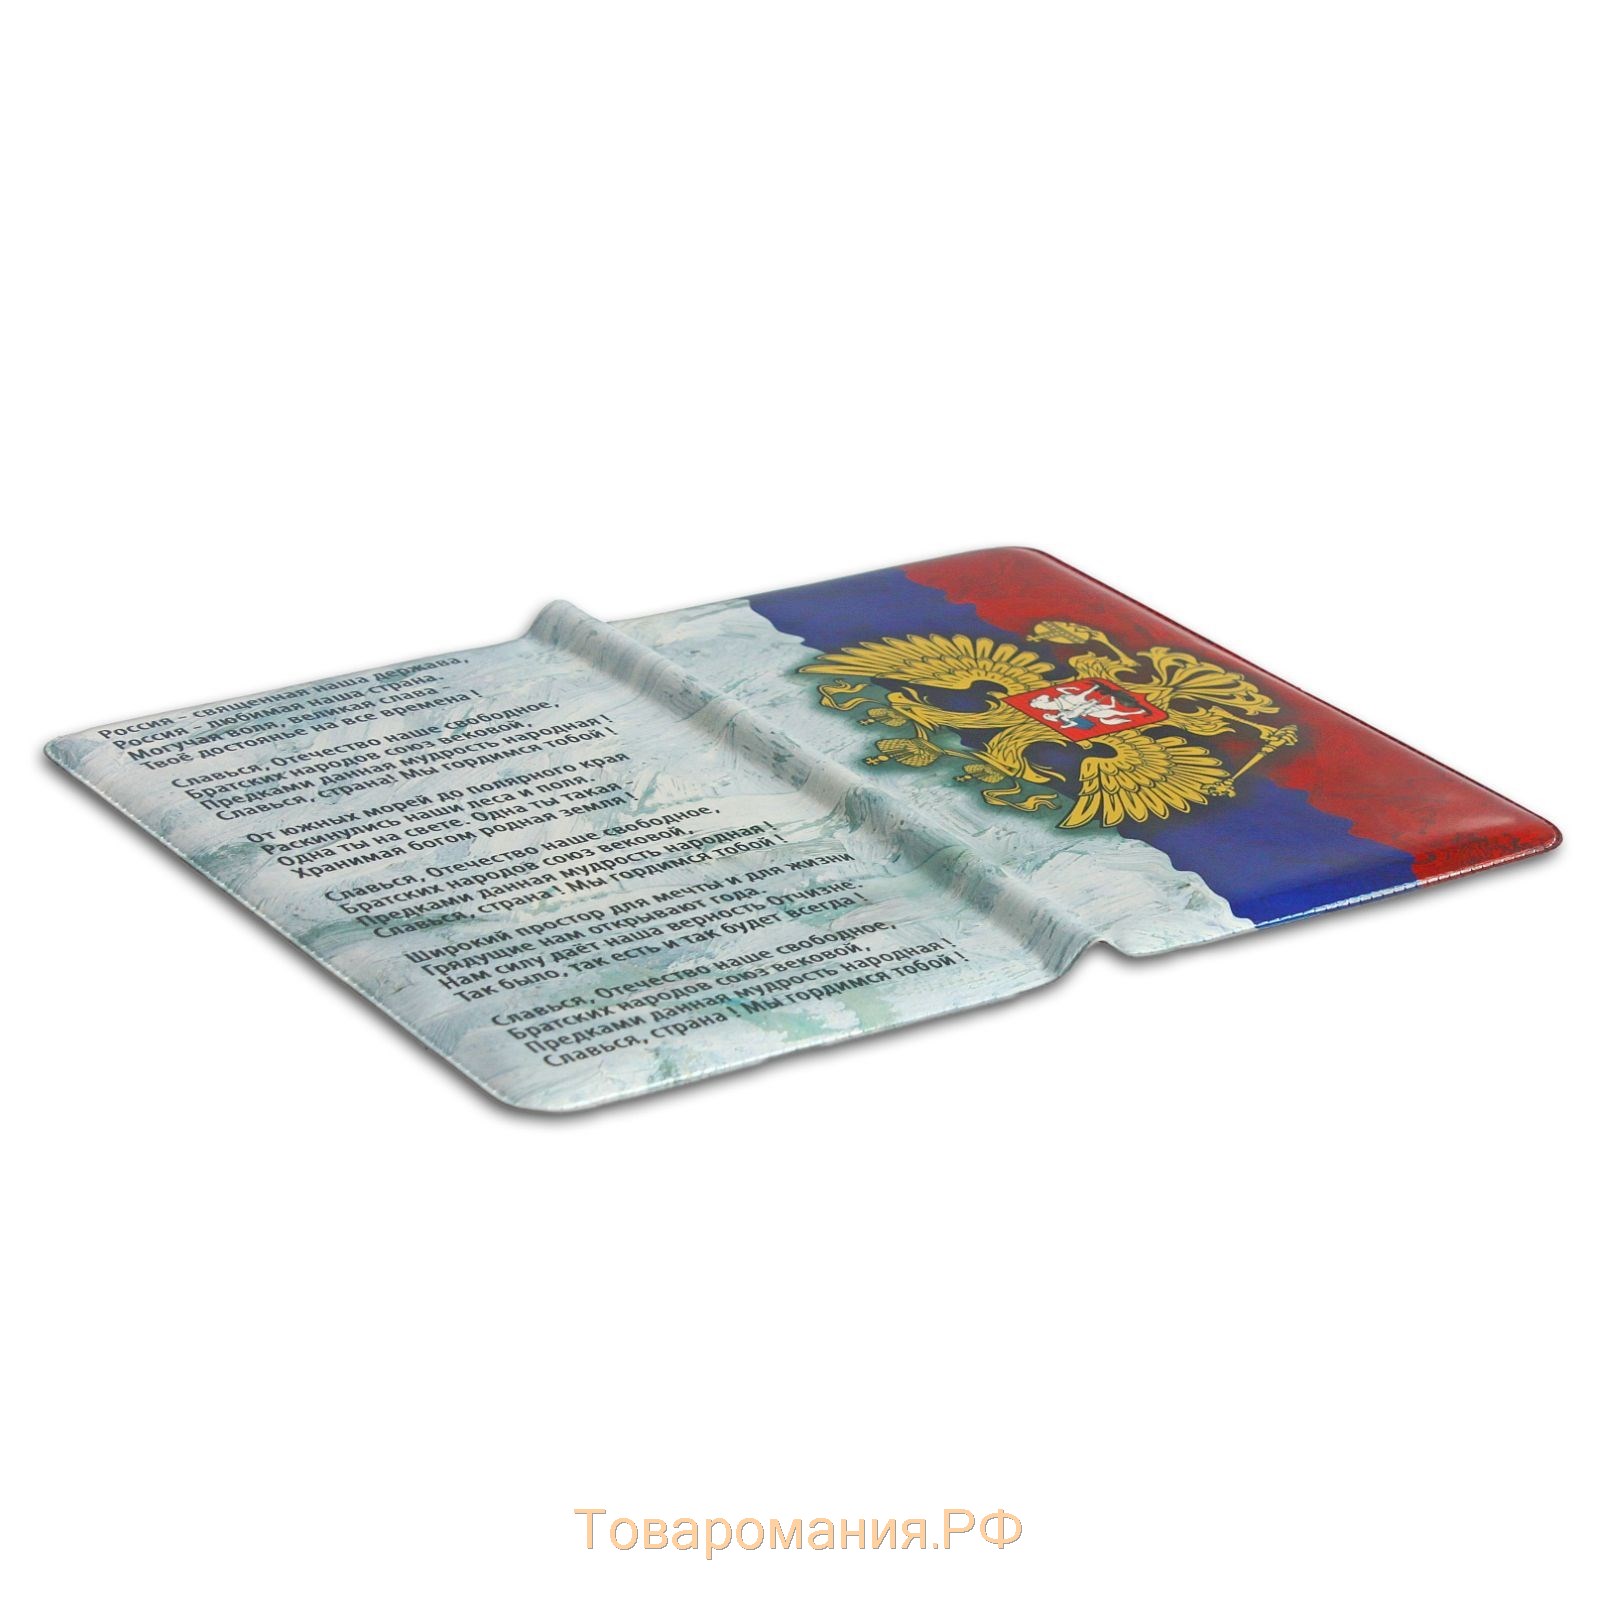 Обложка для паспорта, цвет триколор